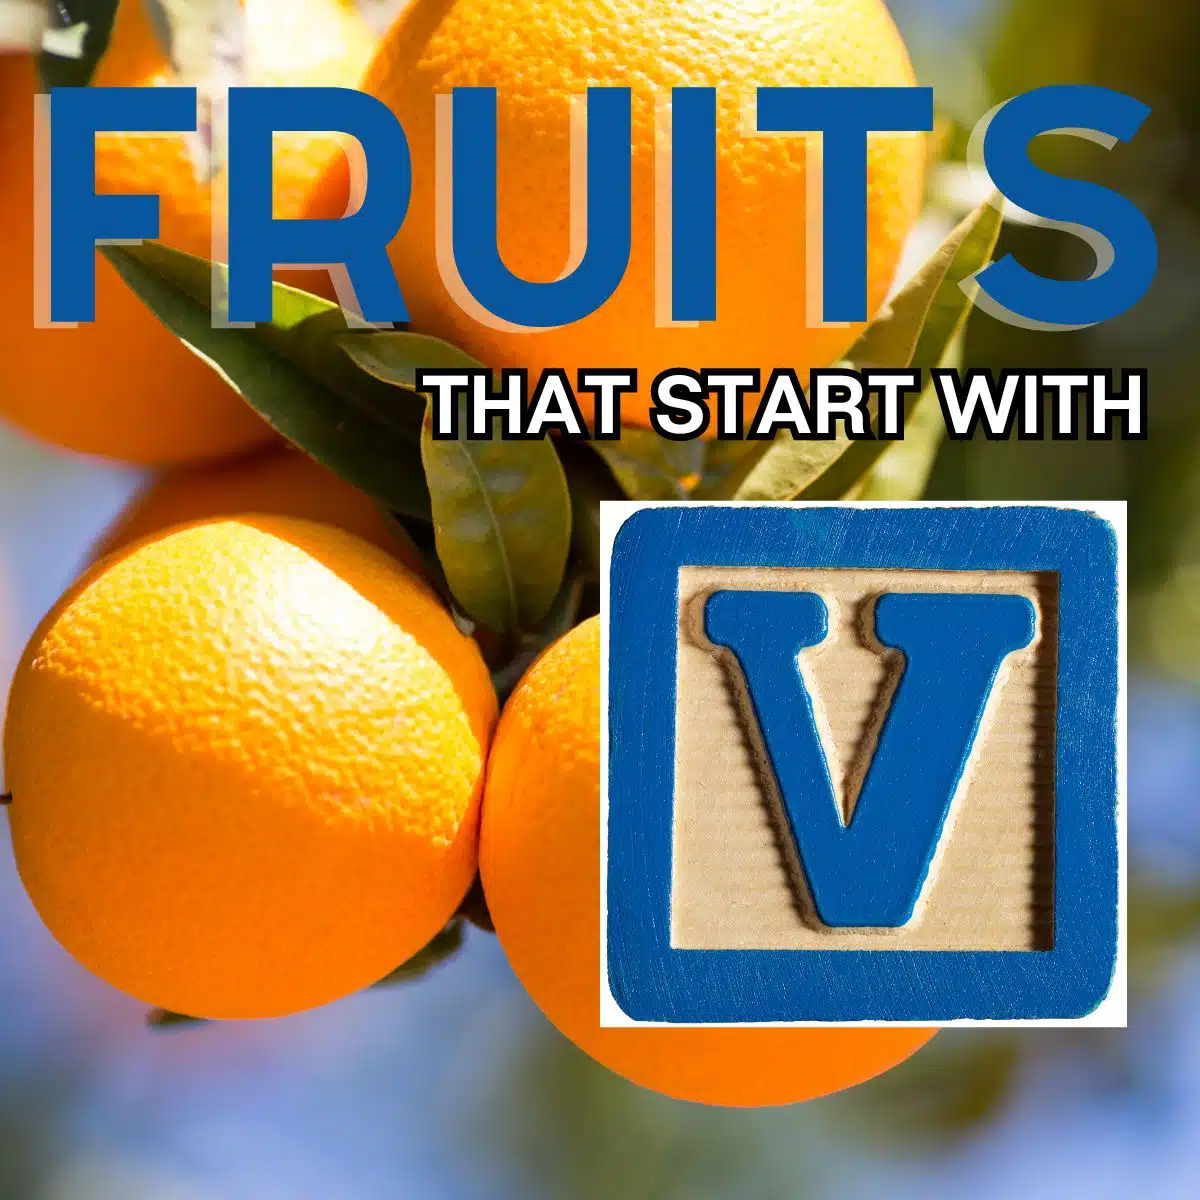 Immagine quadrata per i frutti che iniziano con la lettera V, raffigurante il frutto di Valencia.